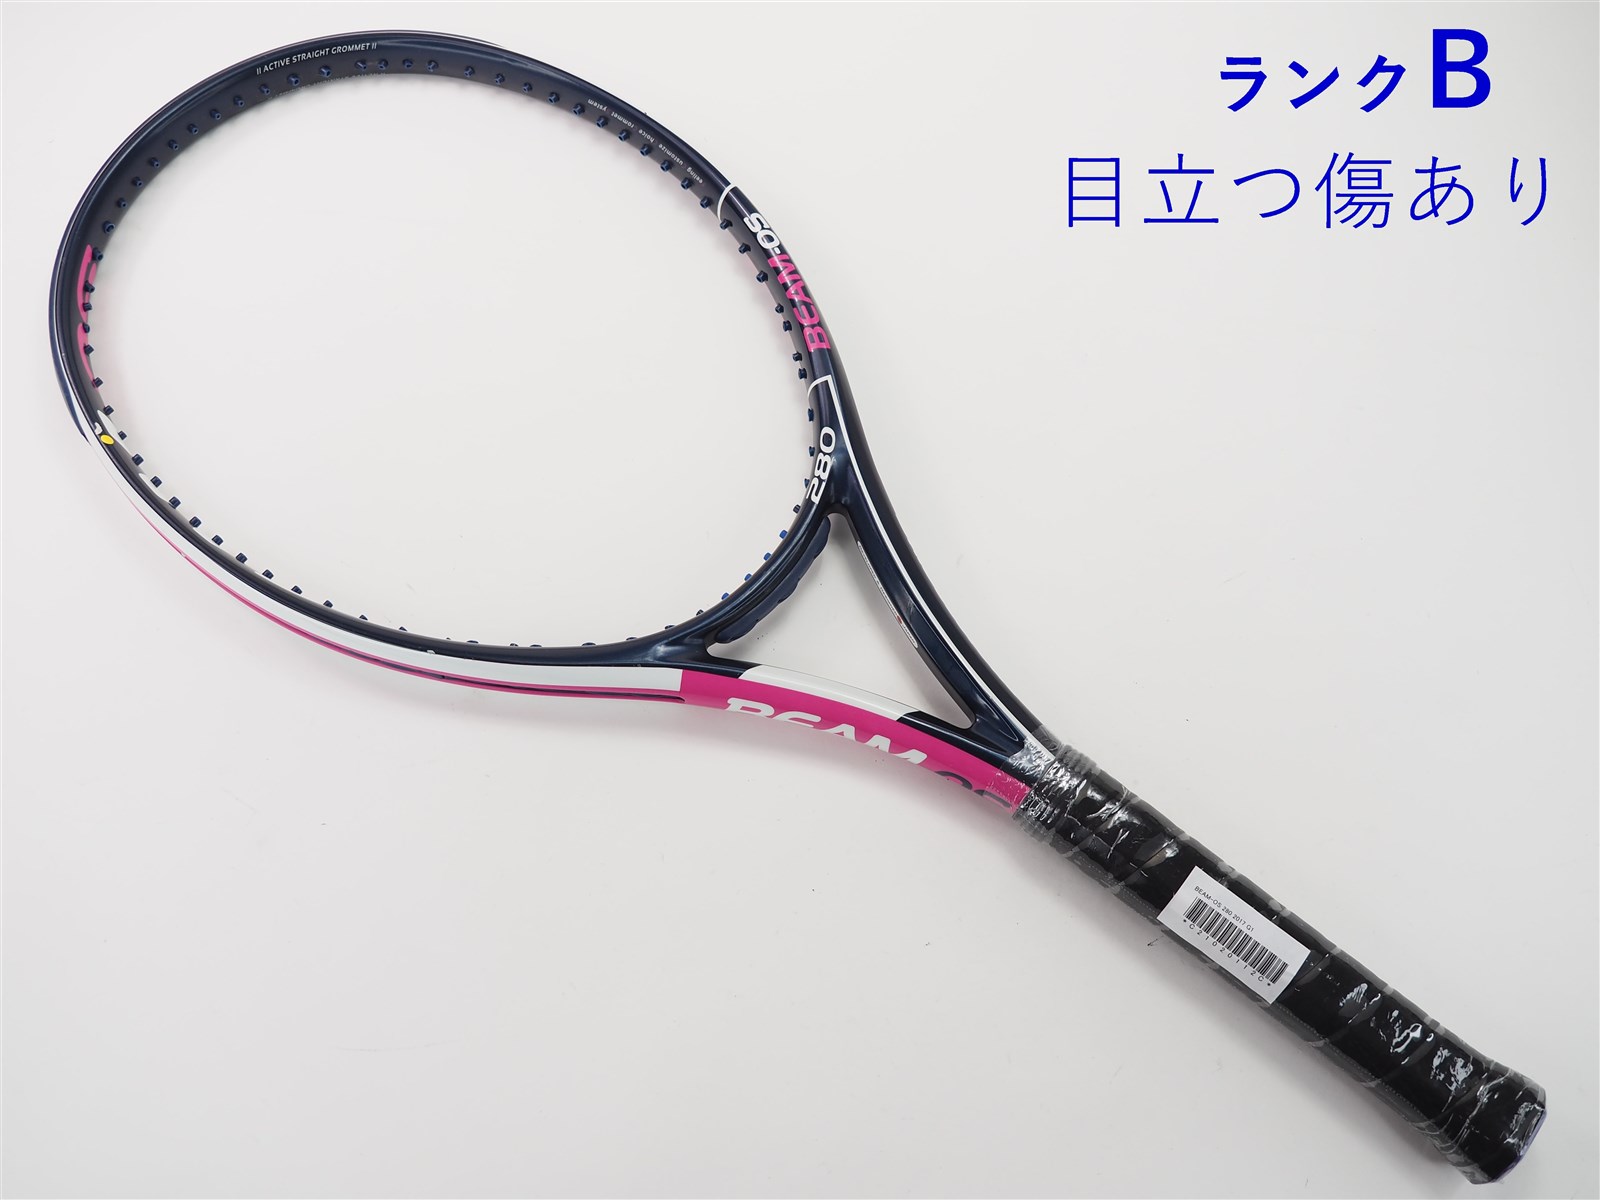 テニスラケット ブリヂストン ビーム OS 280 2017年モデル (G2)BRIDGESTONE BEAM-OS 280 2017